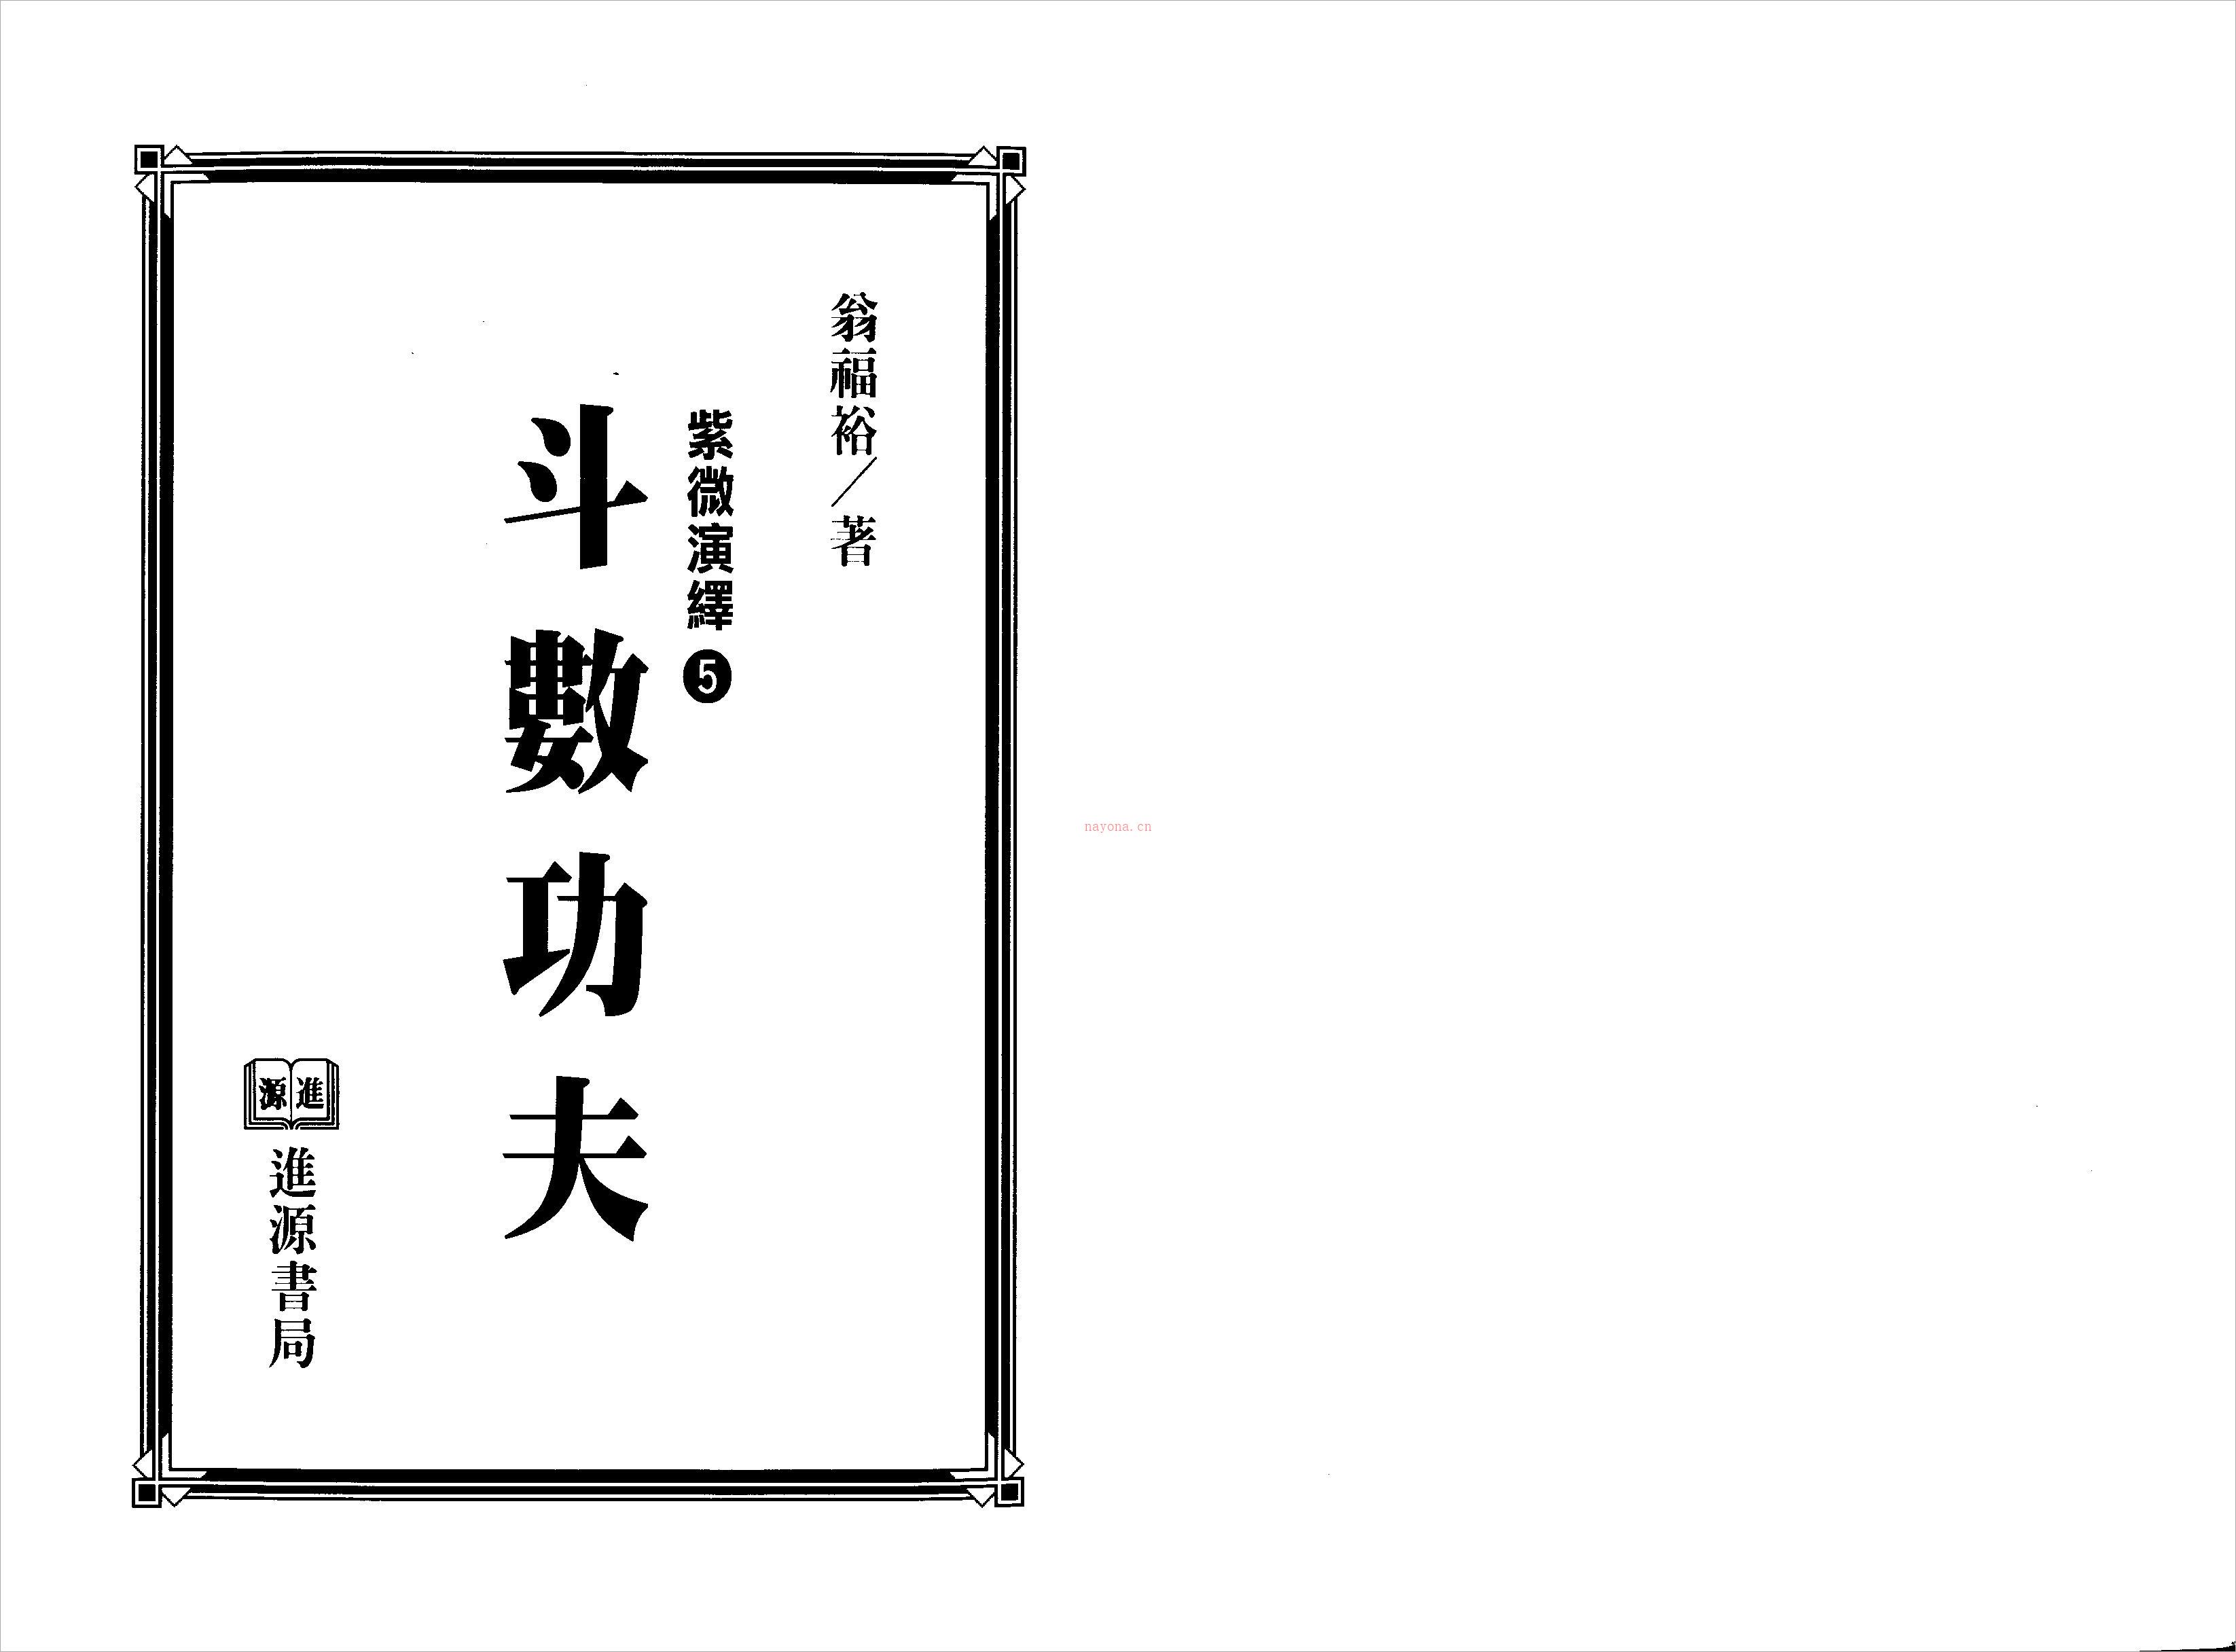 翁福裕-紫微演绎之五-斗数功夫（225页）.pdf 百度网盘资源